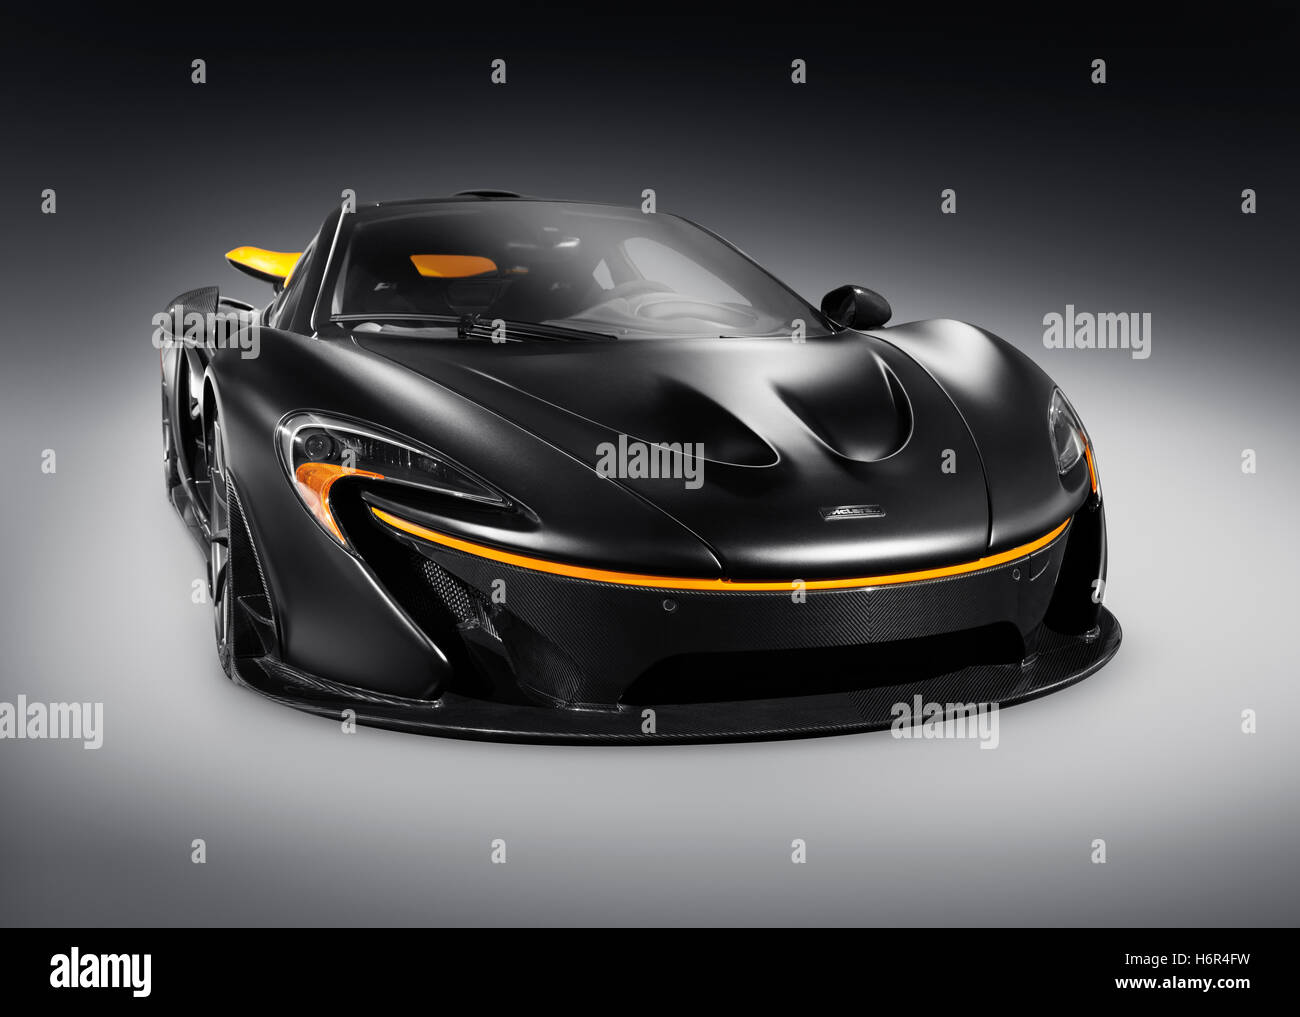 Negro mate 2015 McLaren P1 supercar plug-in híbrido de coches deportivos aislado sobre fondo gris con trazado de recorte Foto de stock